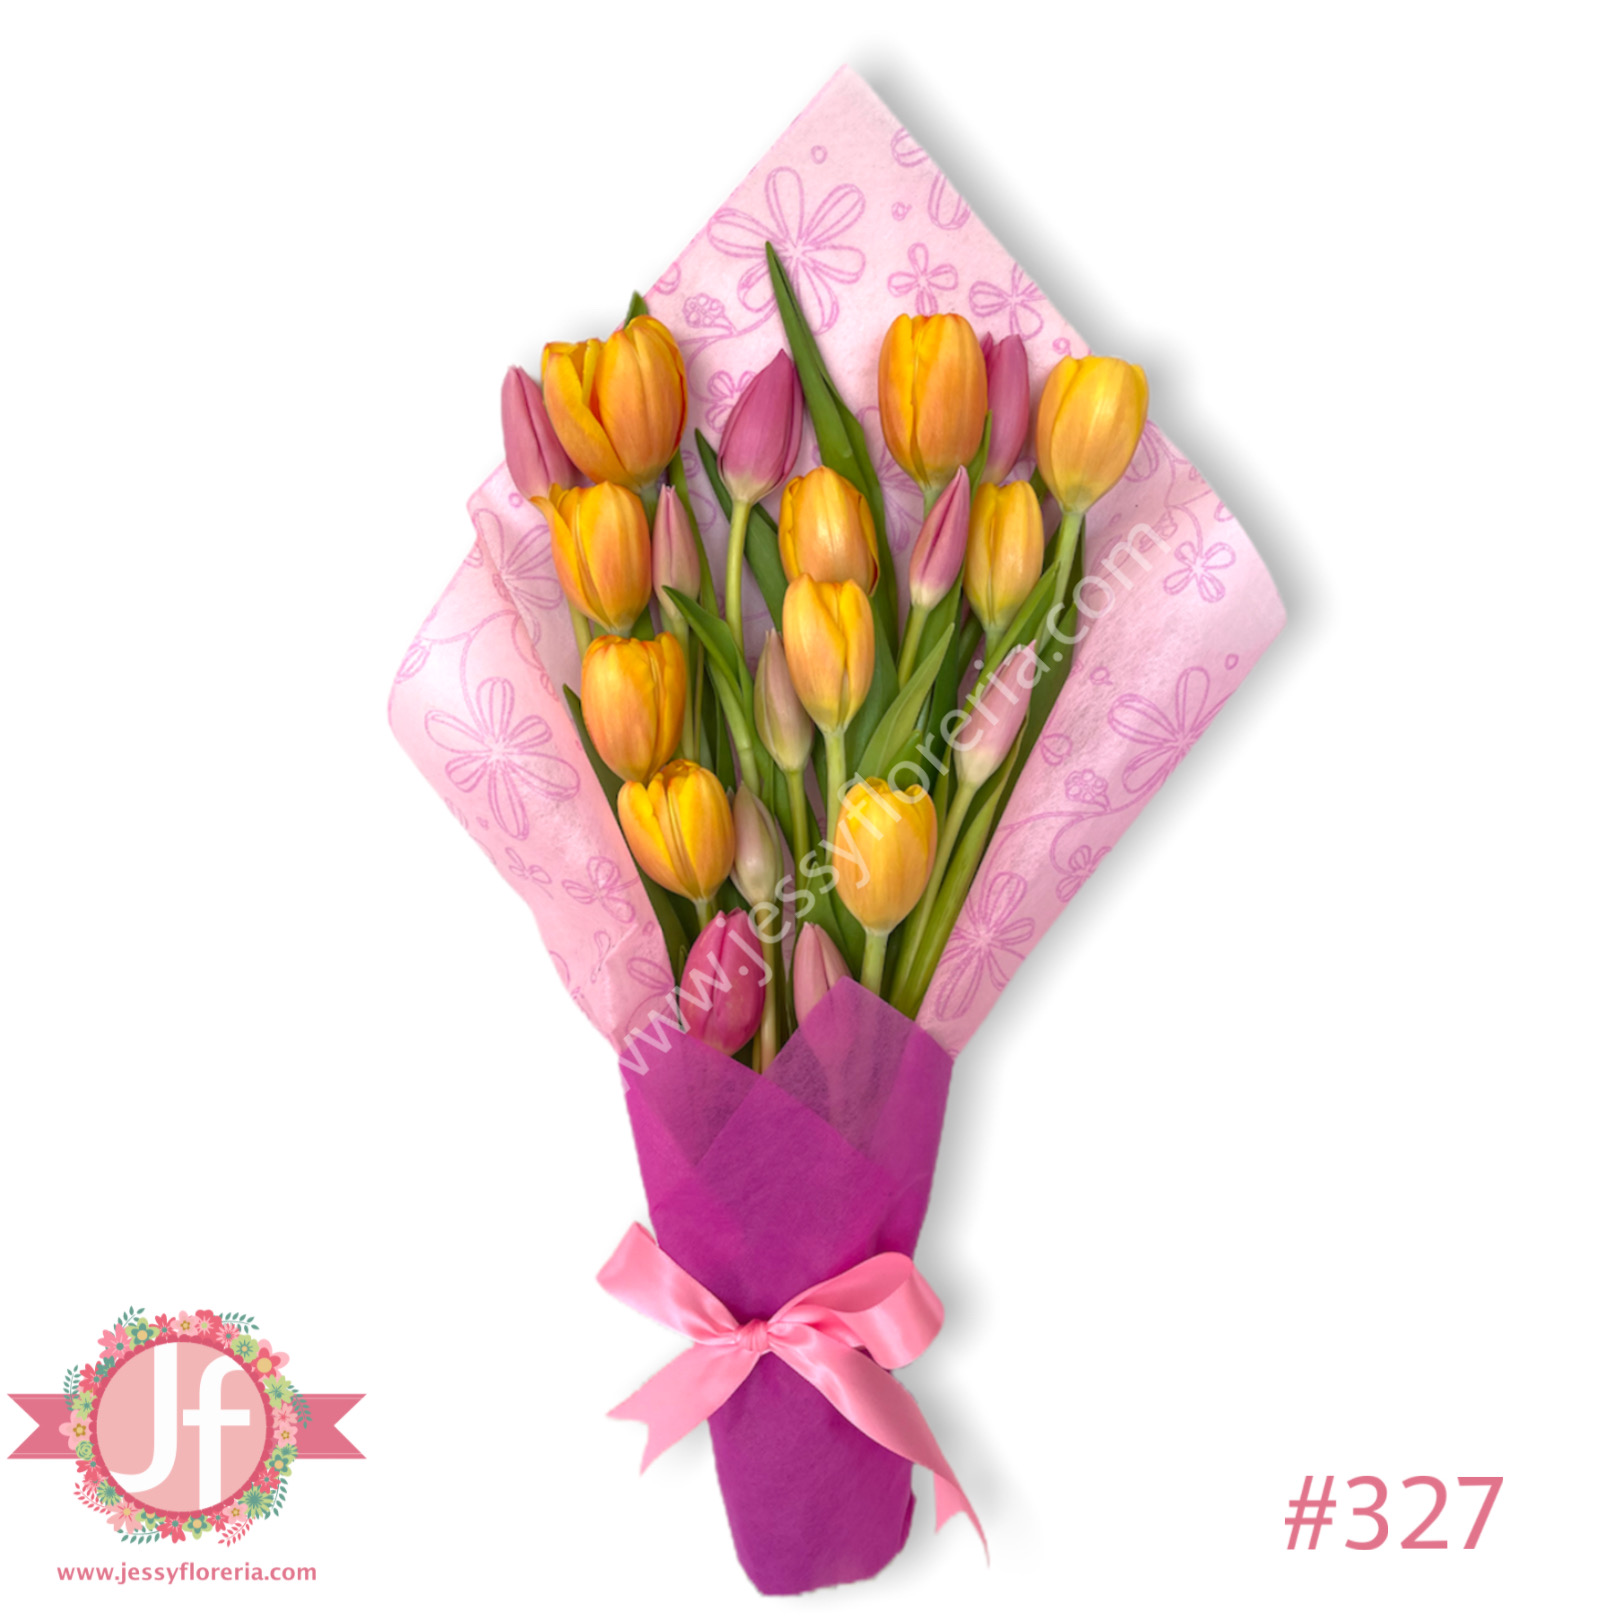 Ramo de 20 tulipanes - Envío GRATIS mismo día 2-4 Hrs